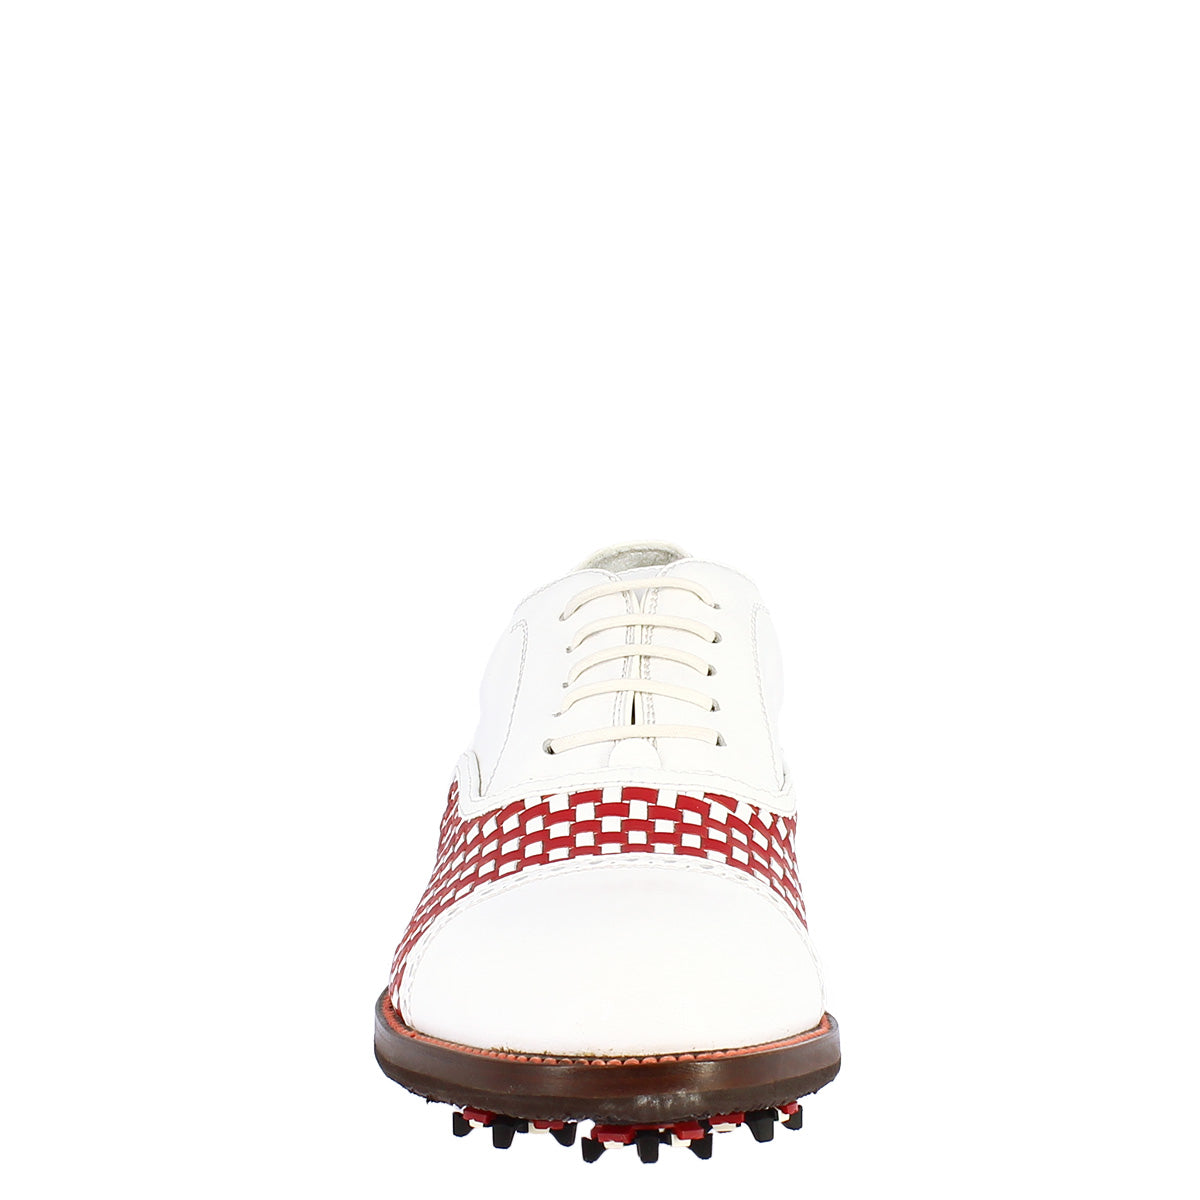 Handgefertigte klassische Damen-Golfschuhe aus weißem Leder